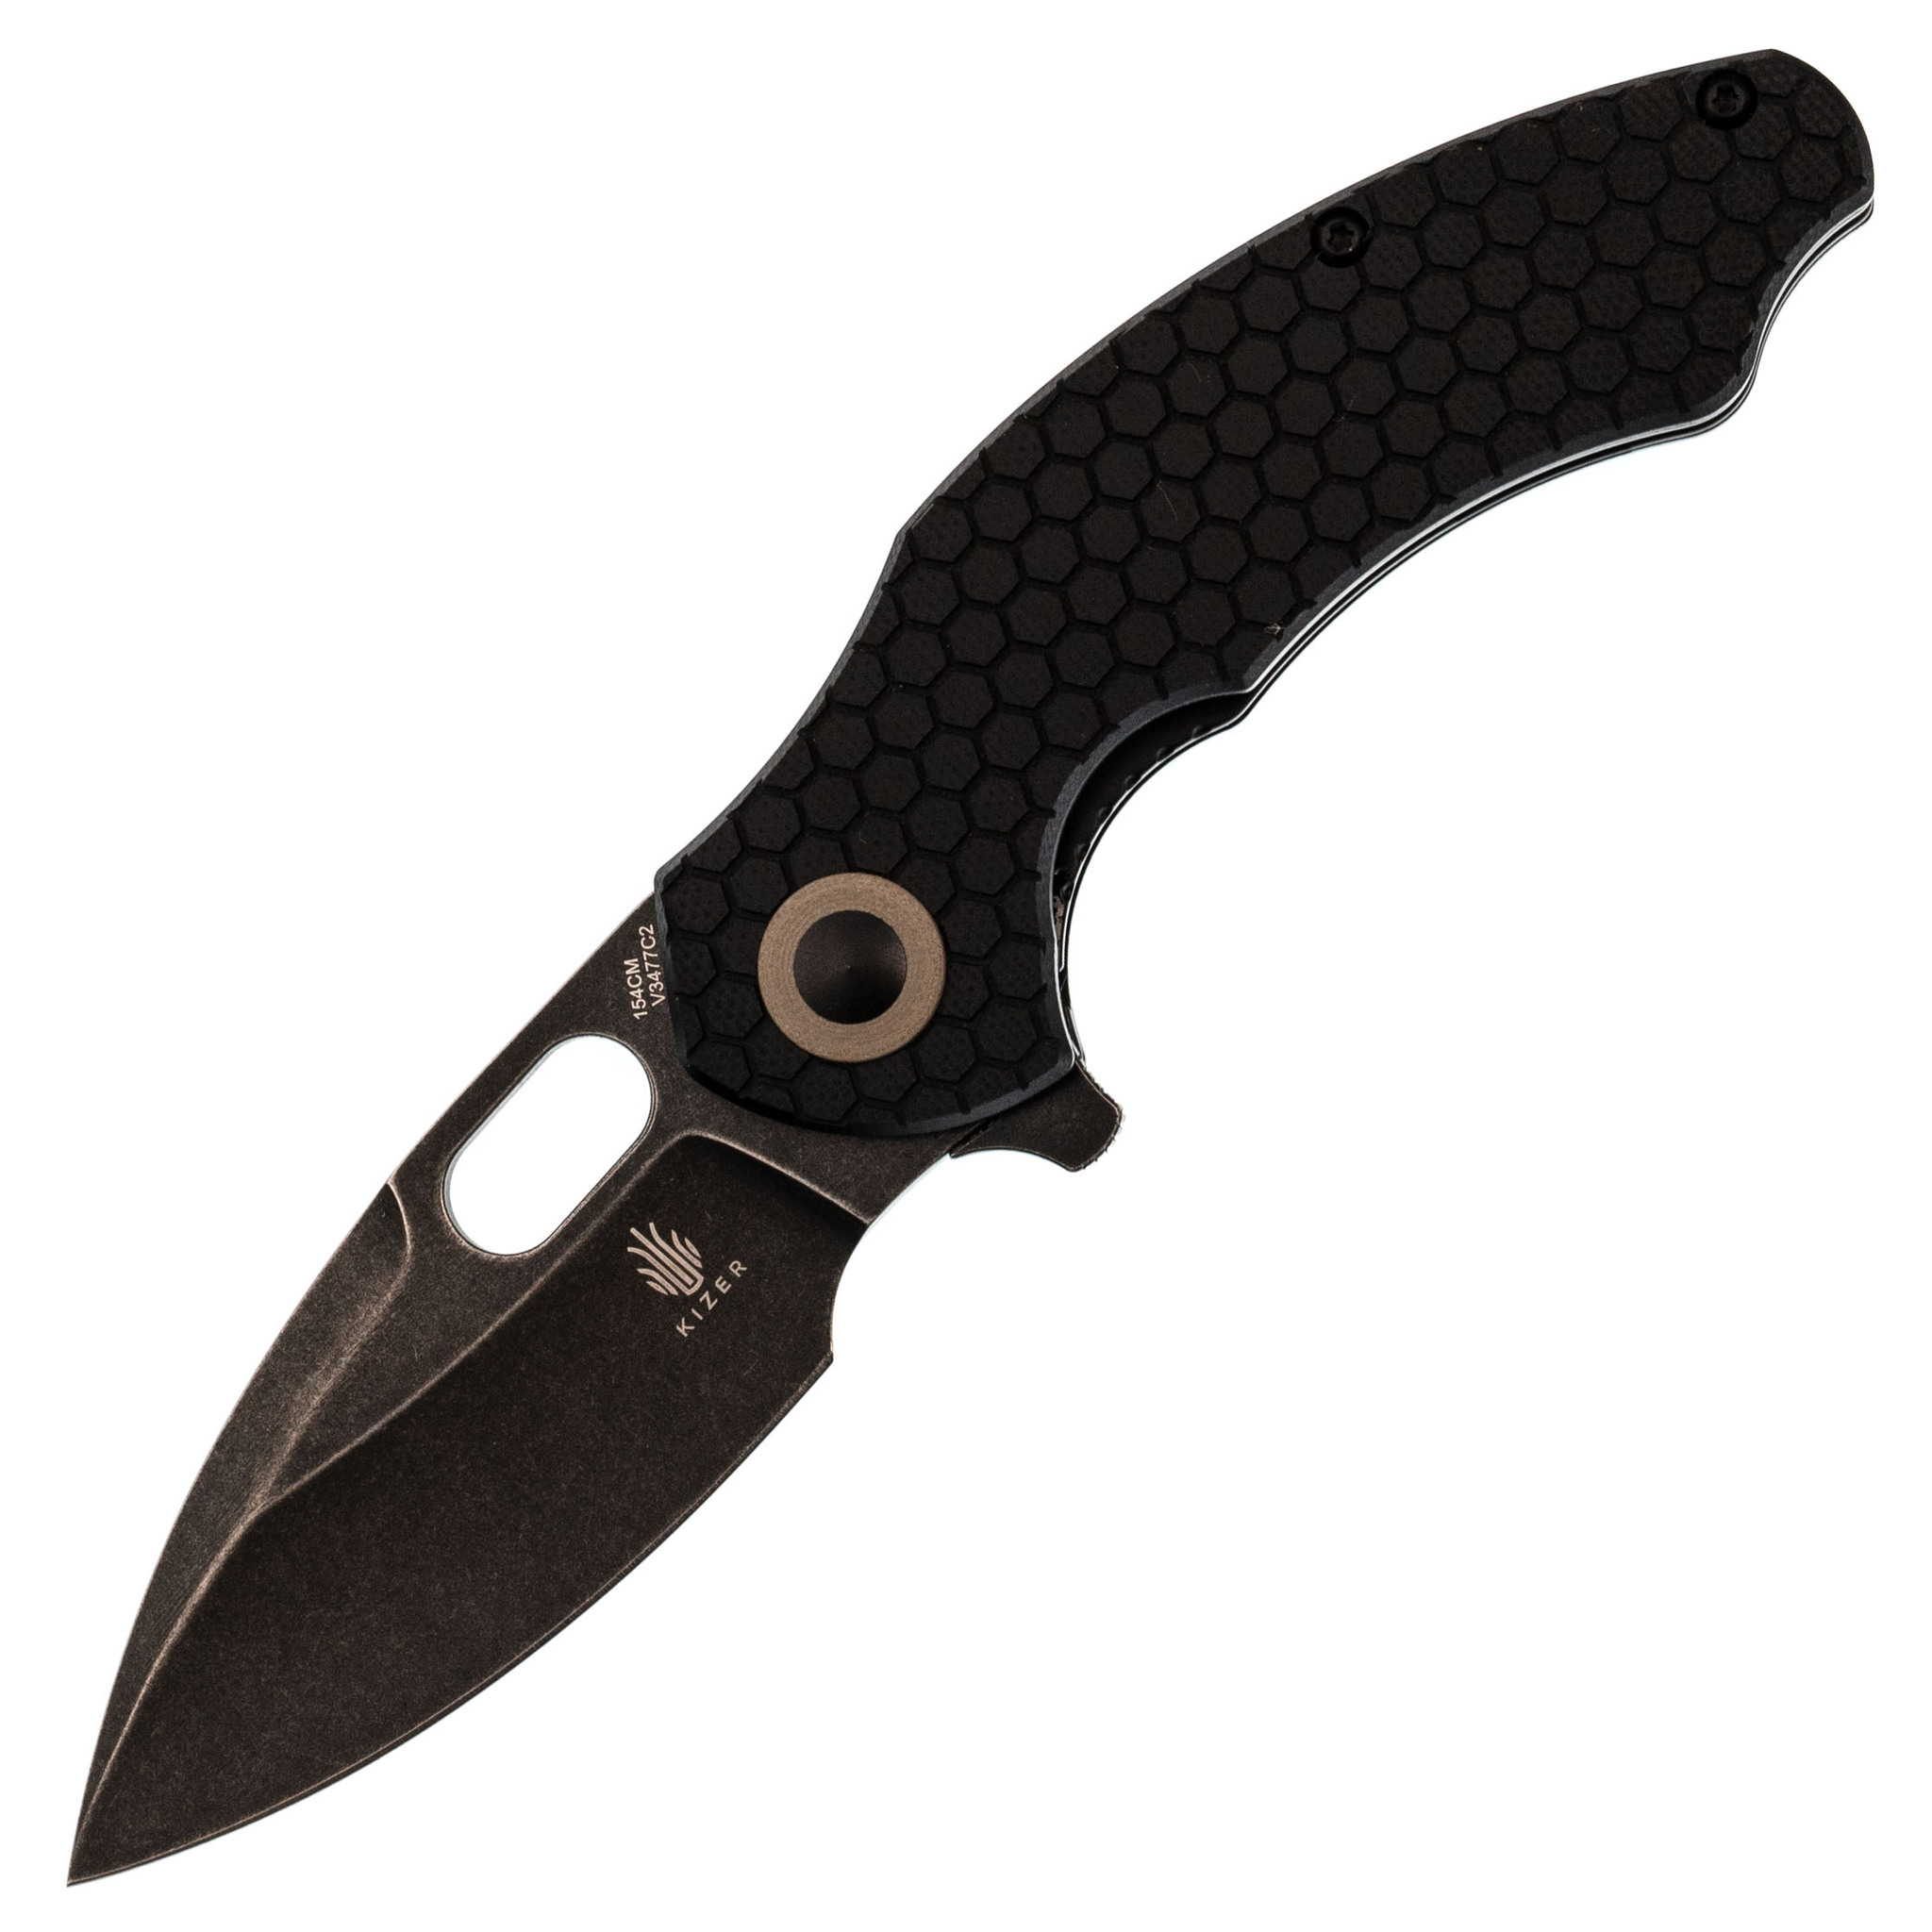 Складной нож Kizer Roach Mini, сталь 154CM, рукоять G10, черный